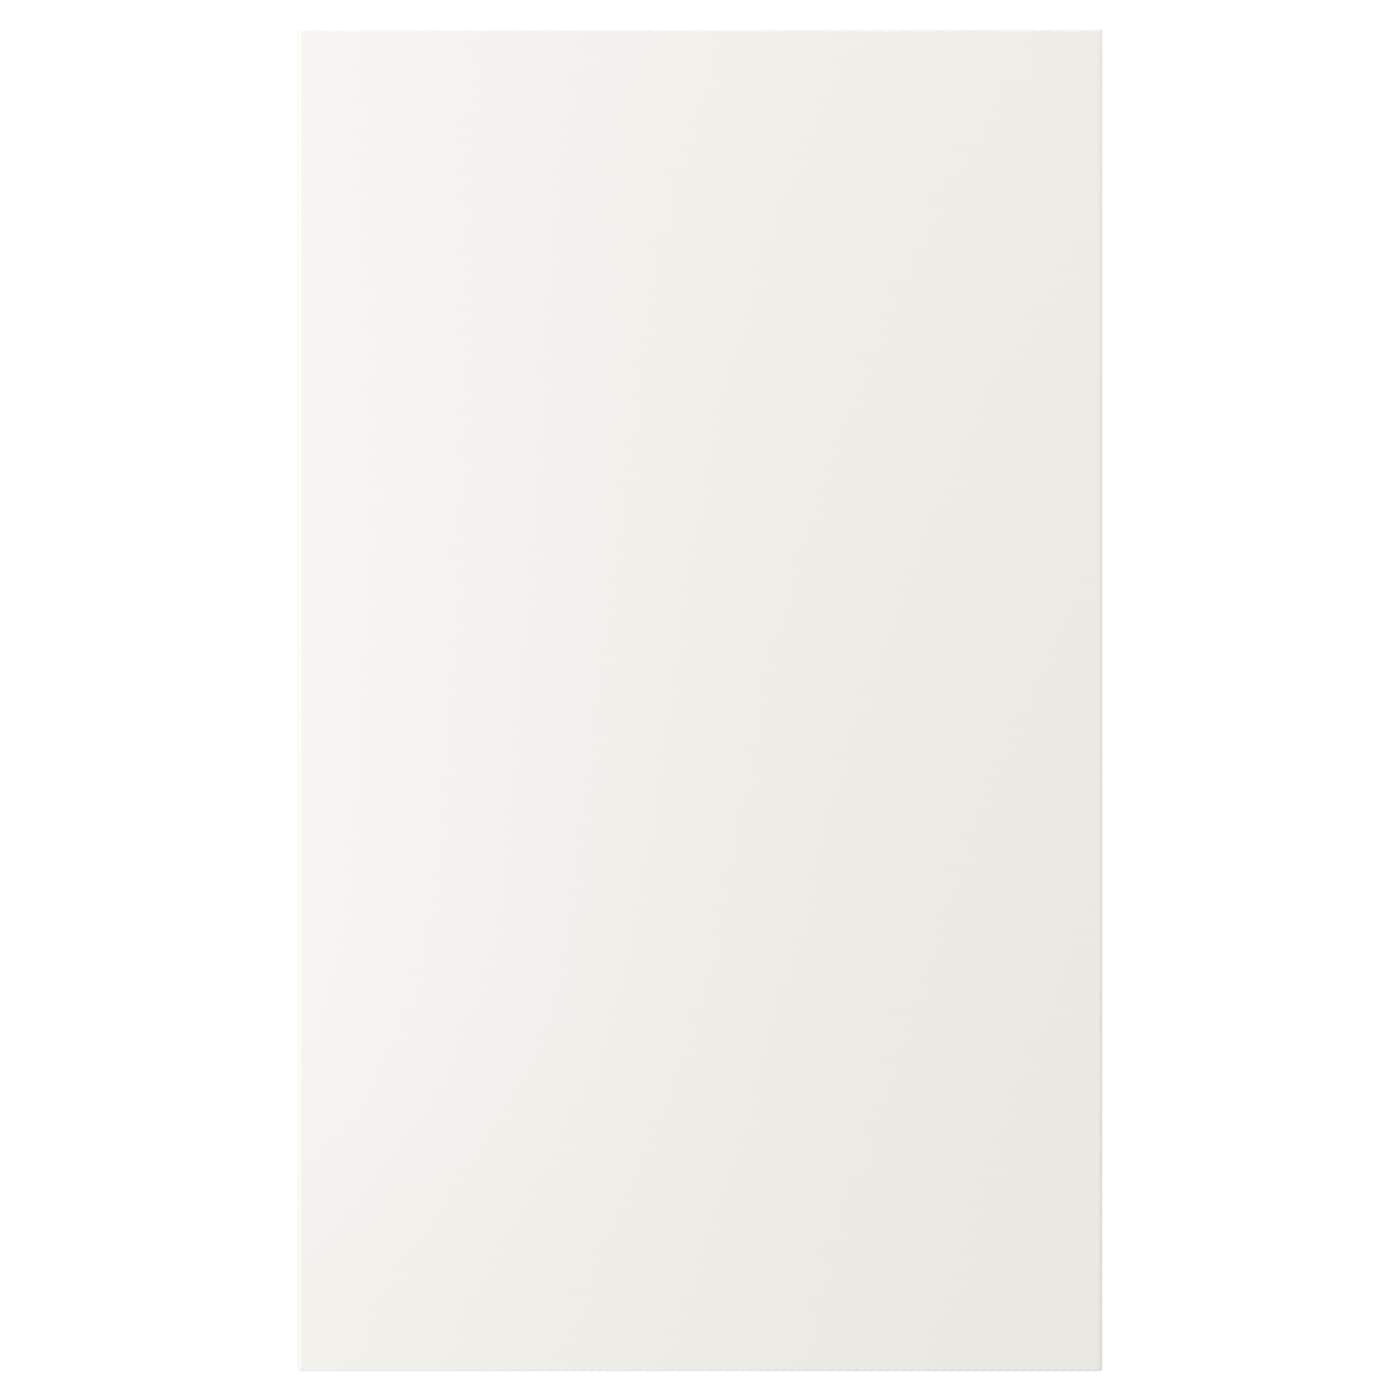 Дверца - IKEA VEDDINGE, 100х60 см, белый, ВЕДИНГЕ ИКЕА